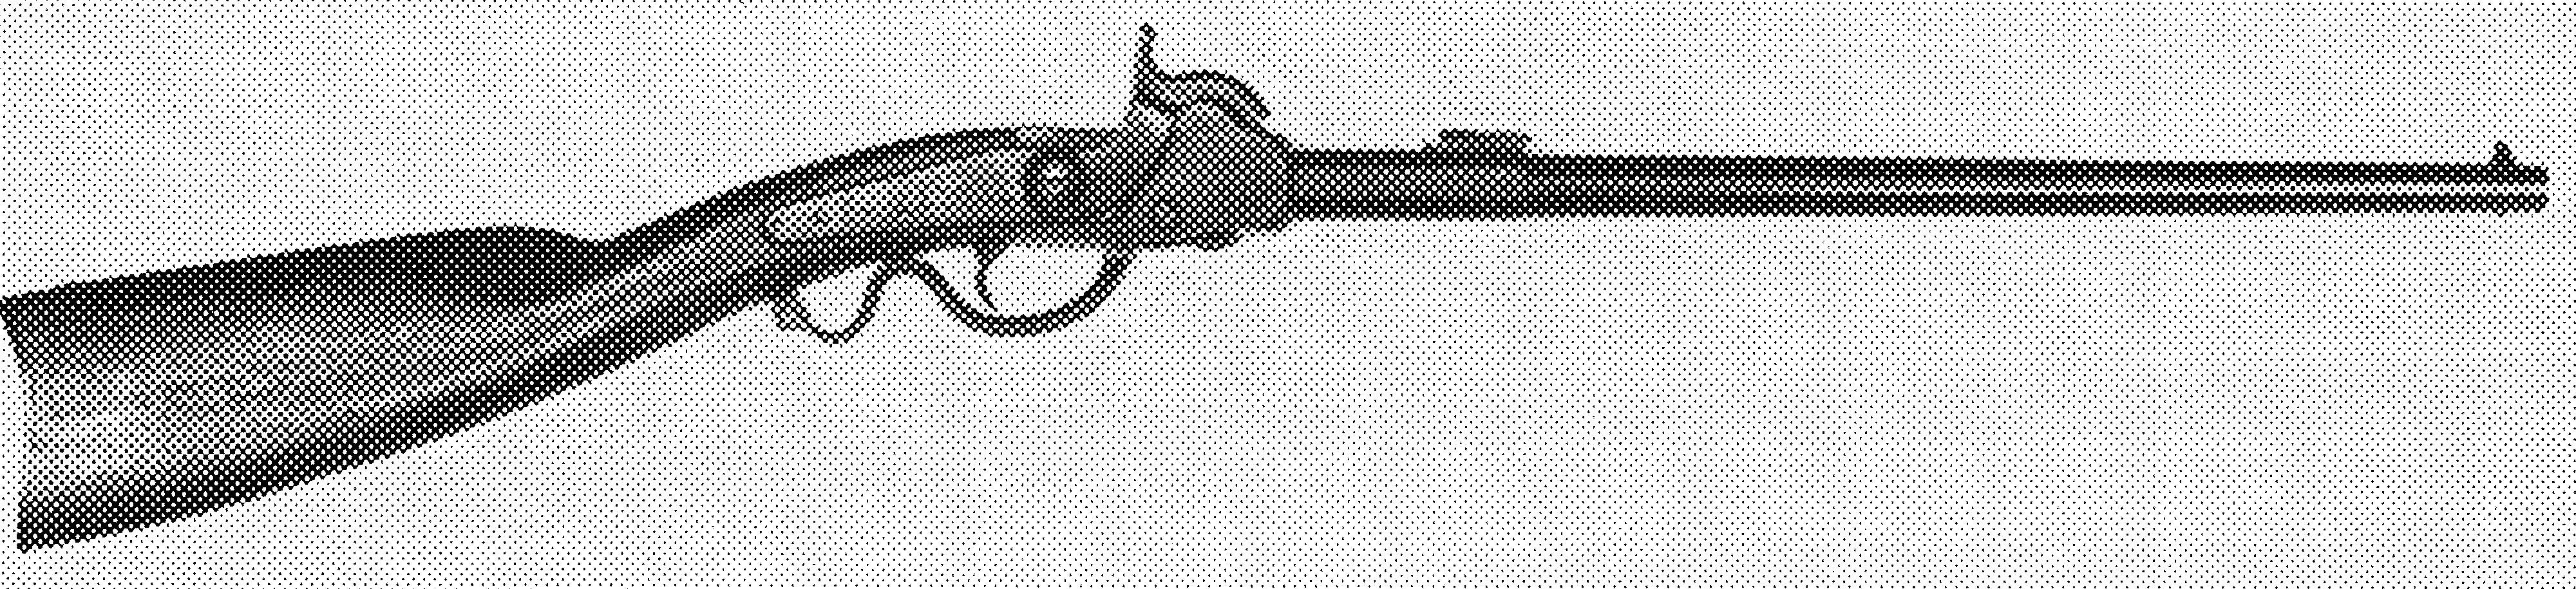 Union Carbine